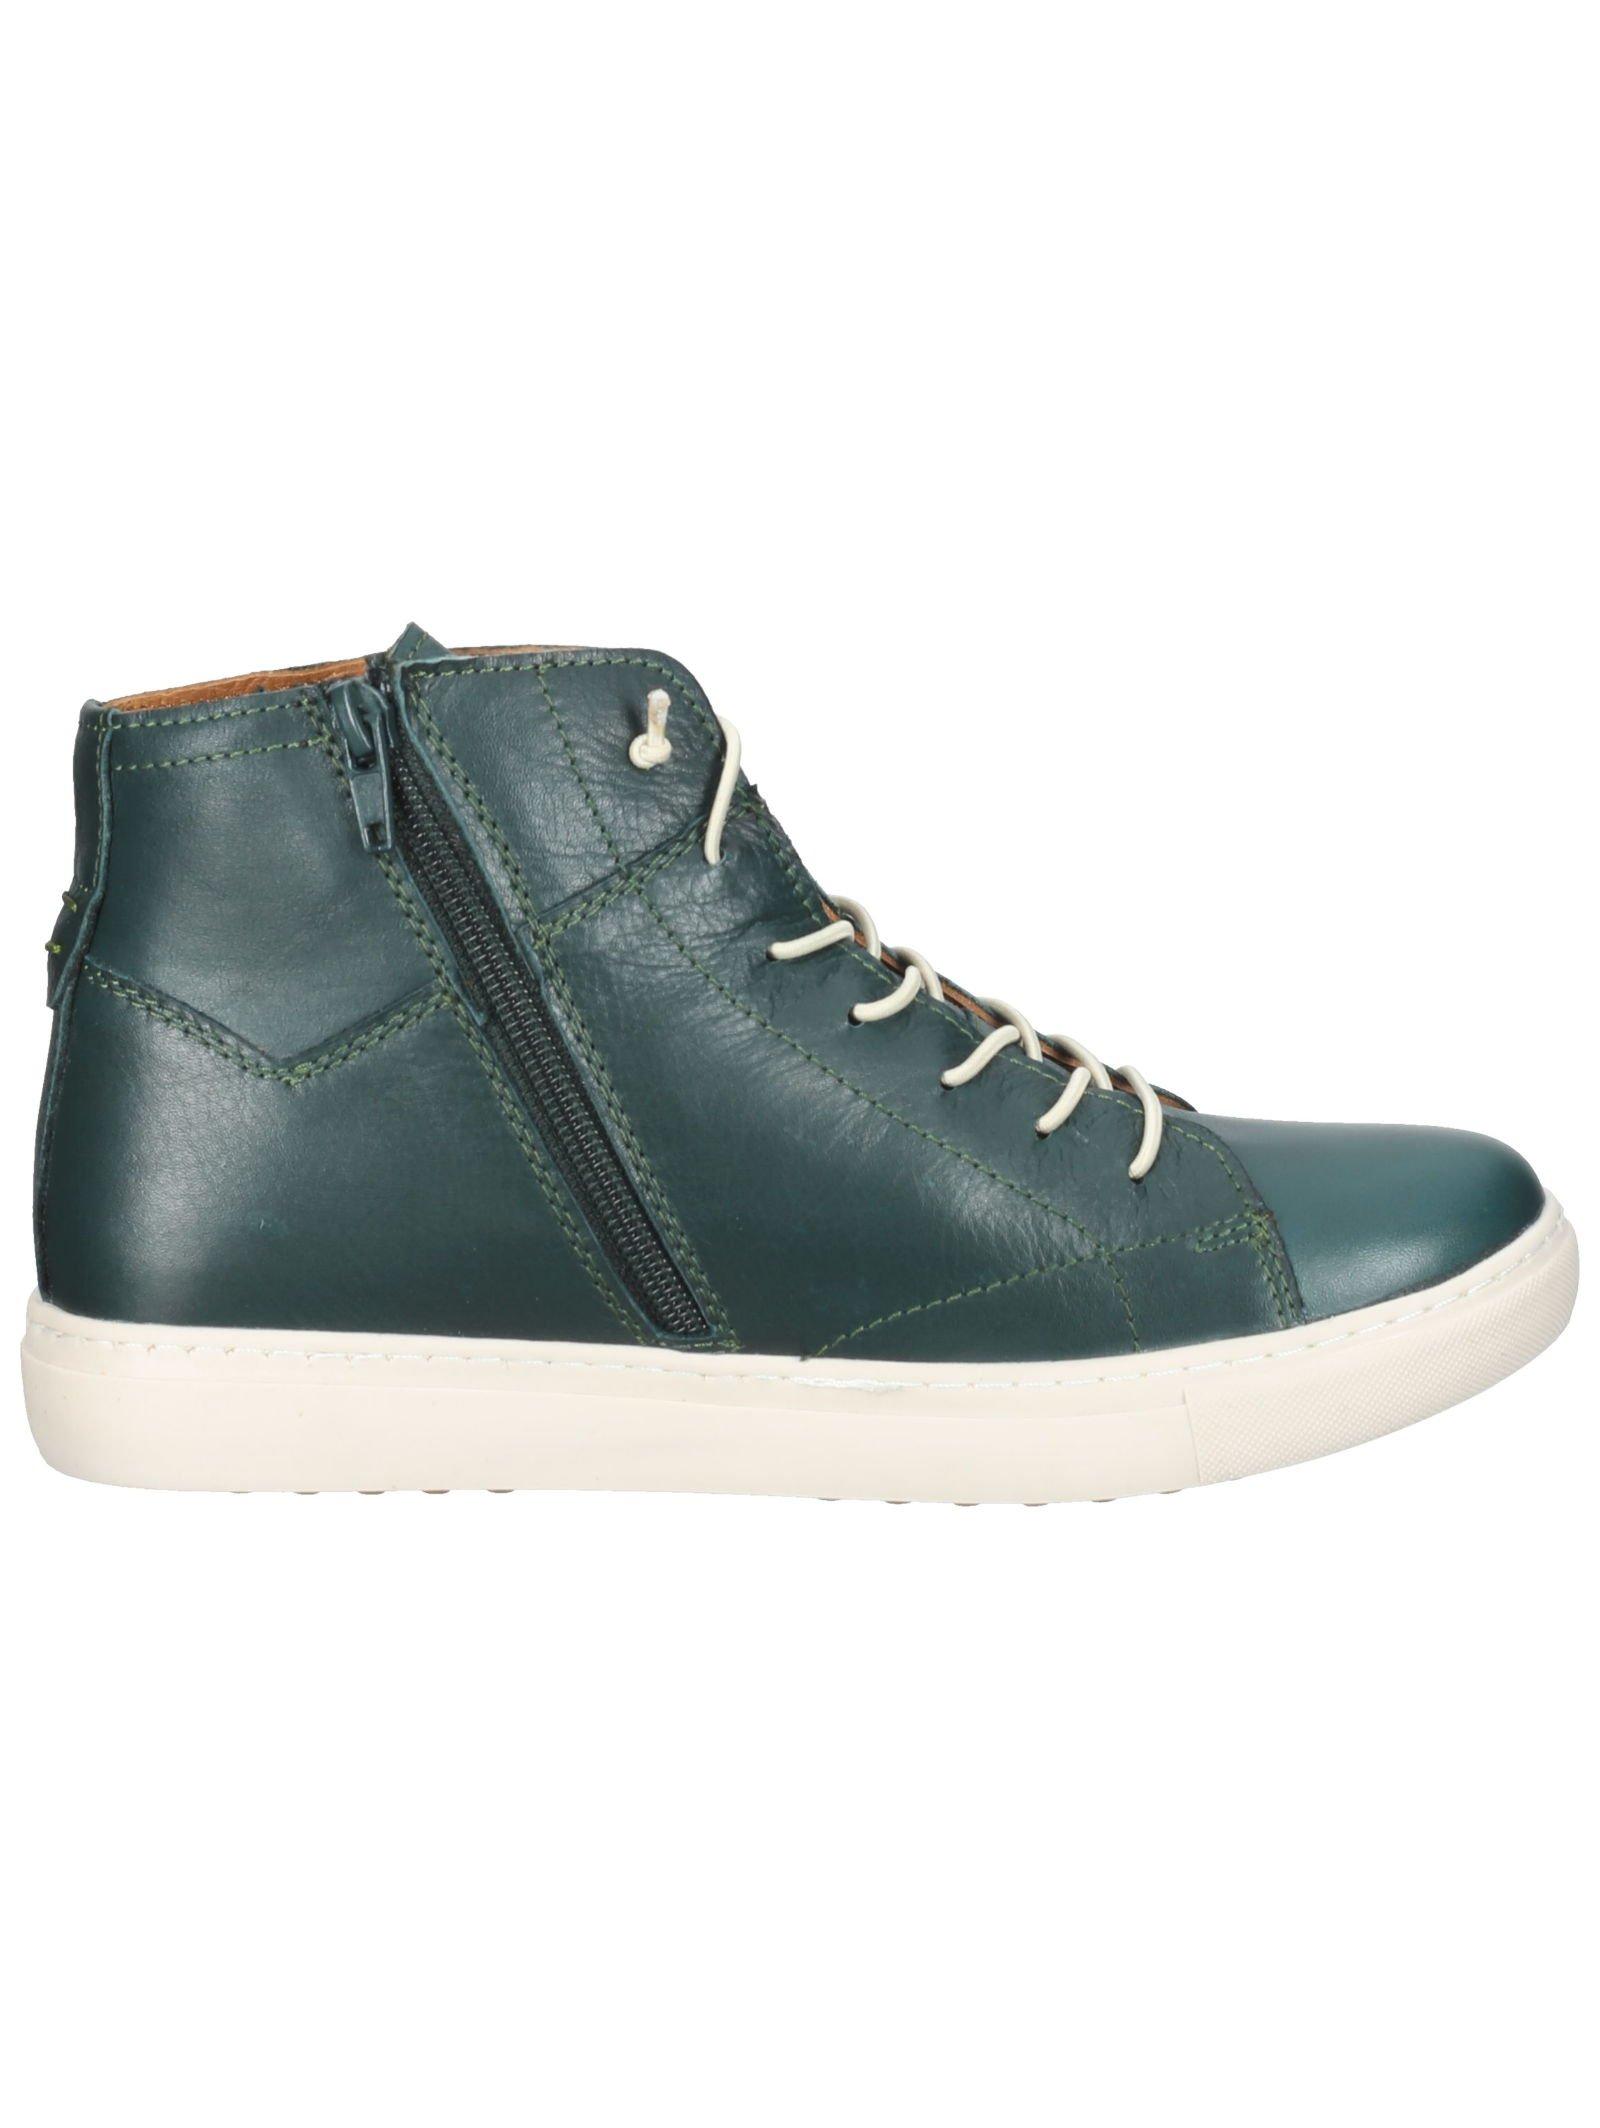 Cosmos Comfort  Sneaker 6179-502 